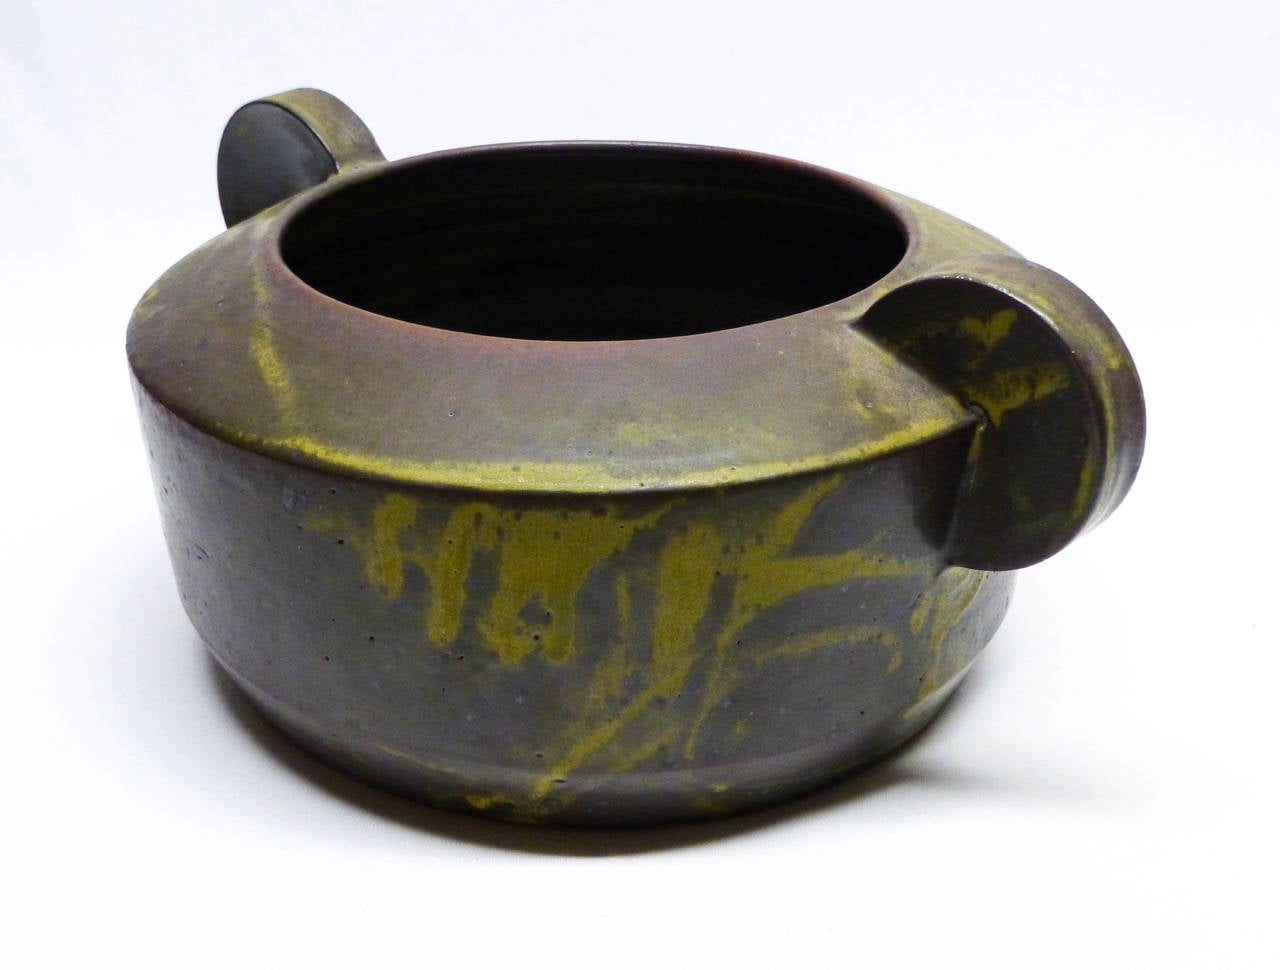 Sculptural Handled Bowl - Modern Art by Richard Fairbanks